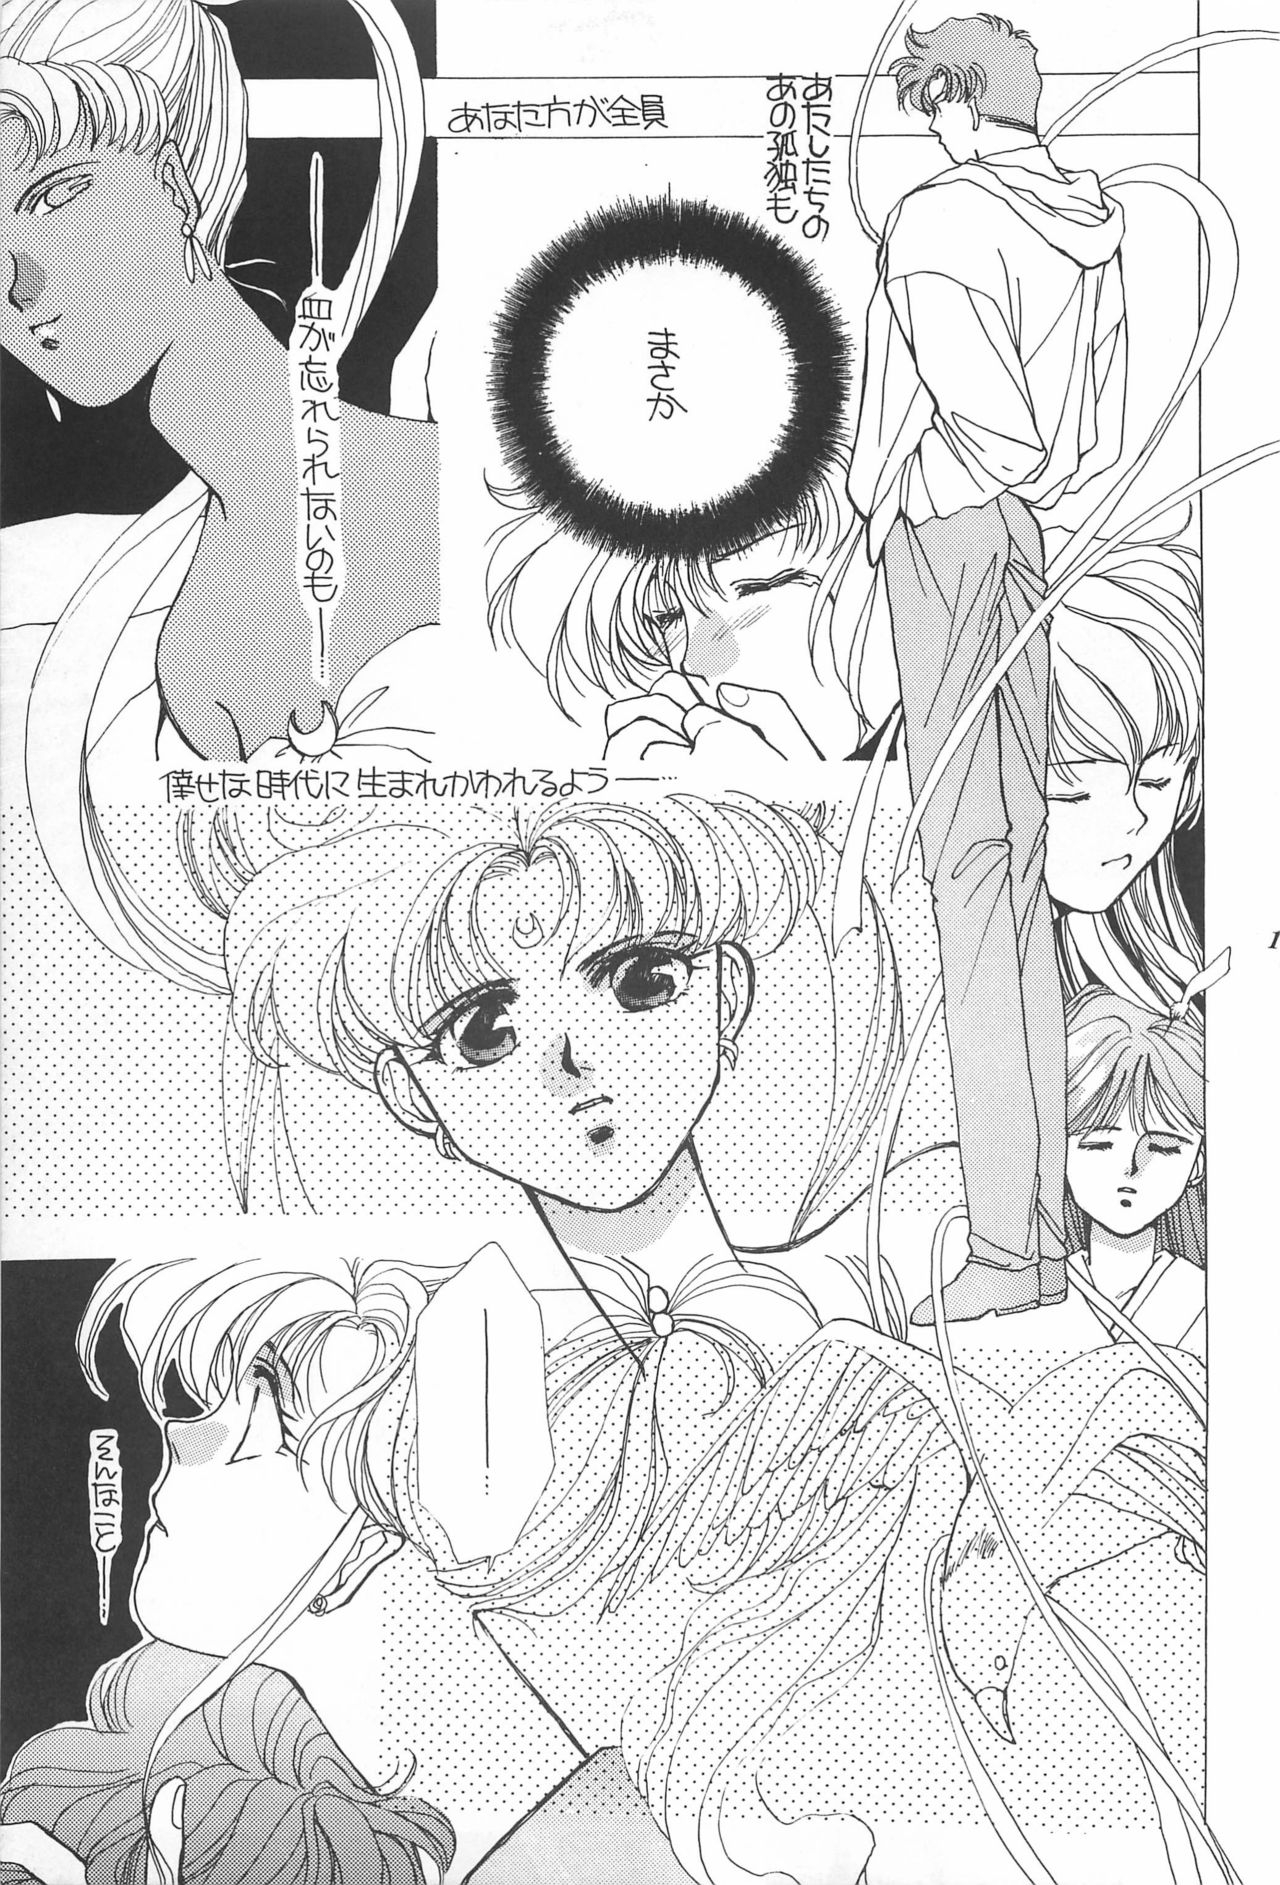 [Hello World (Muttri Moony)] Kaze no You ni Yume no You ni - Sailor Moon Collection (Sailor Moon) 192